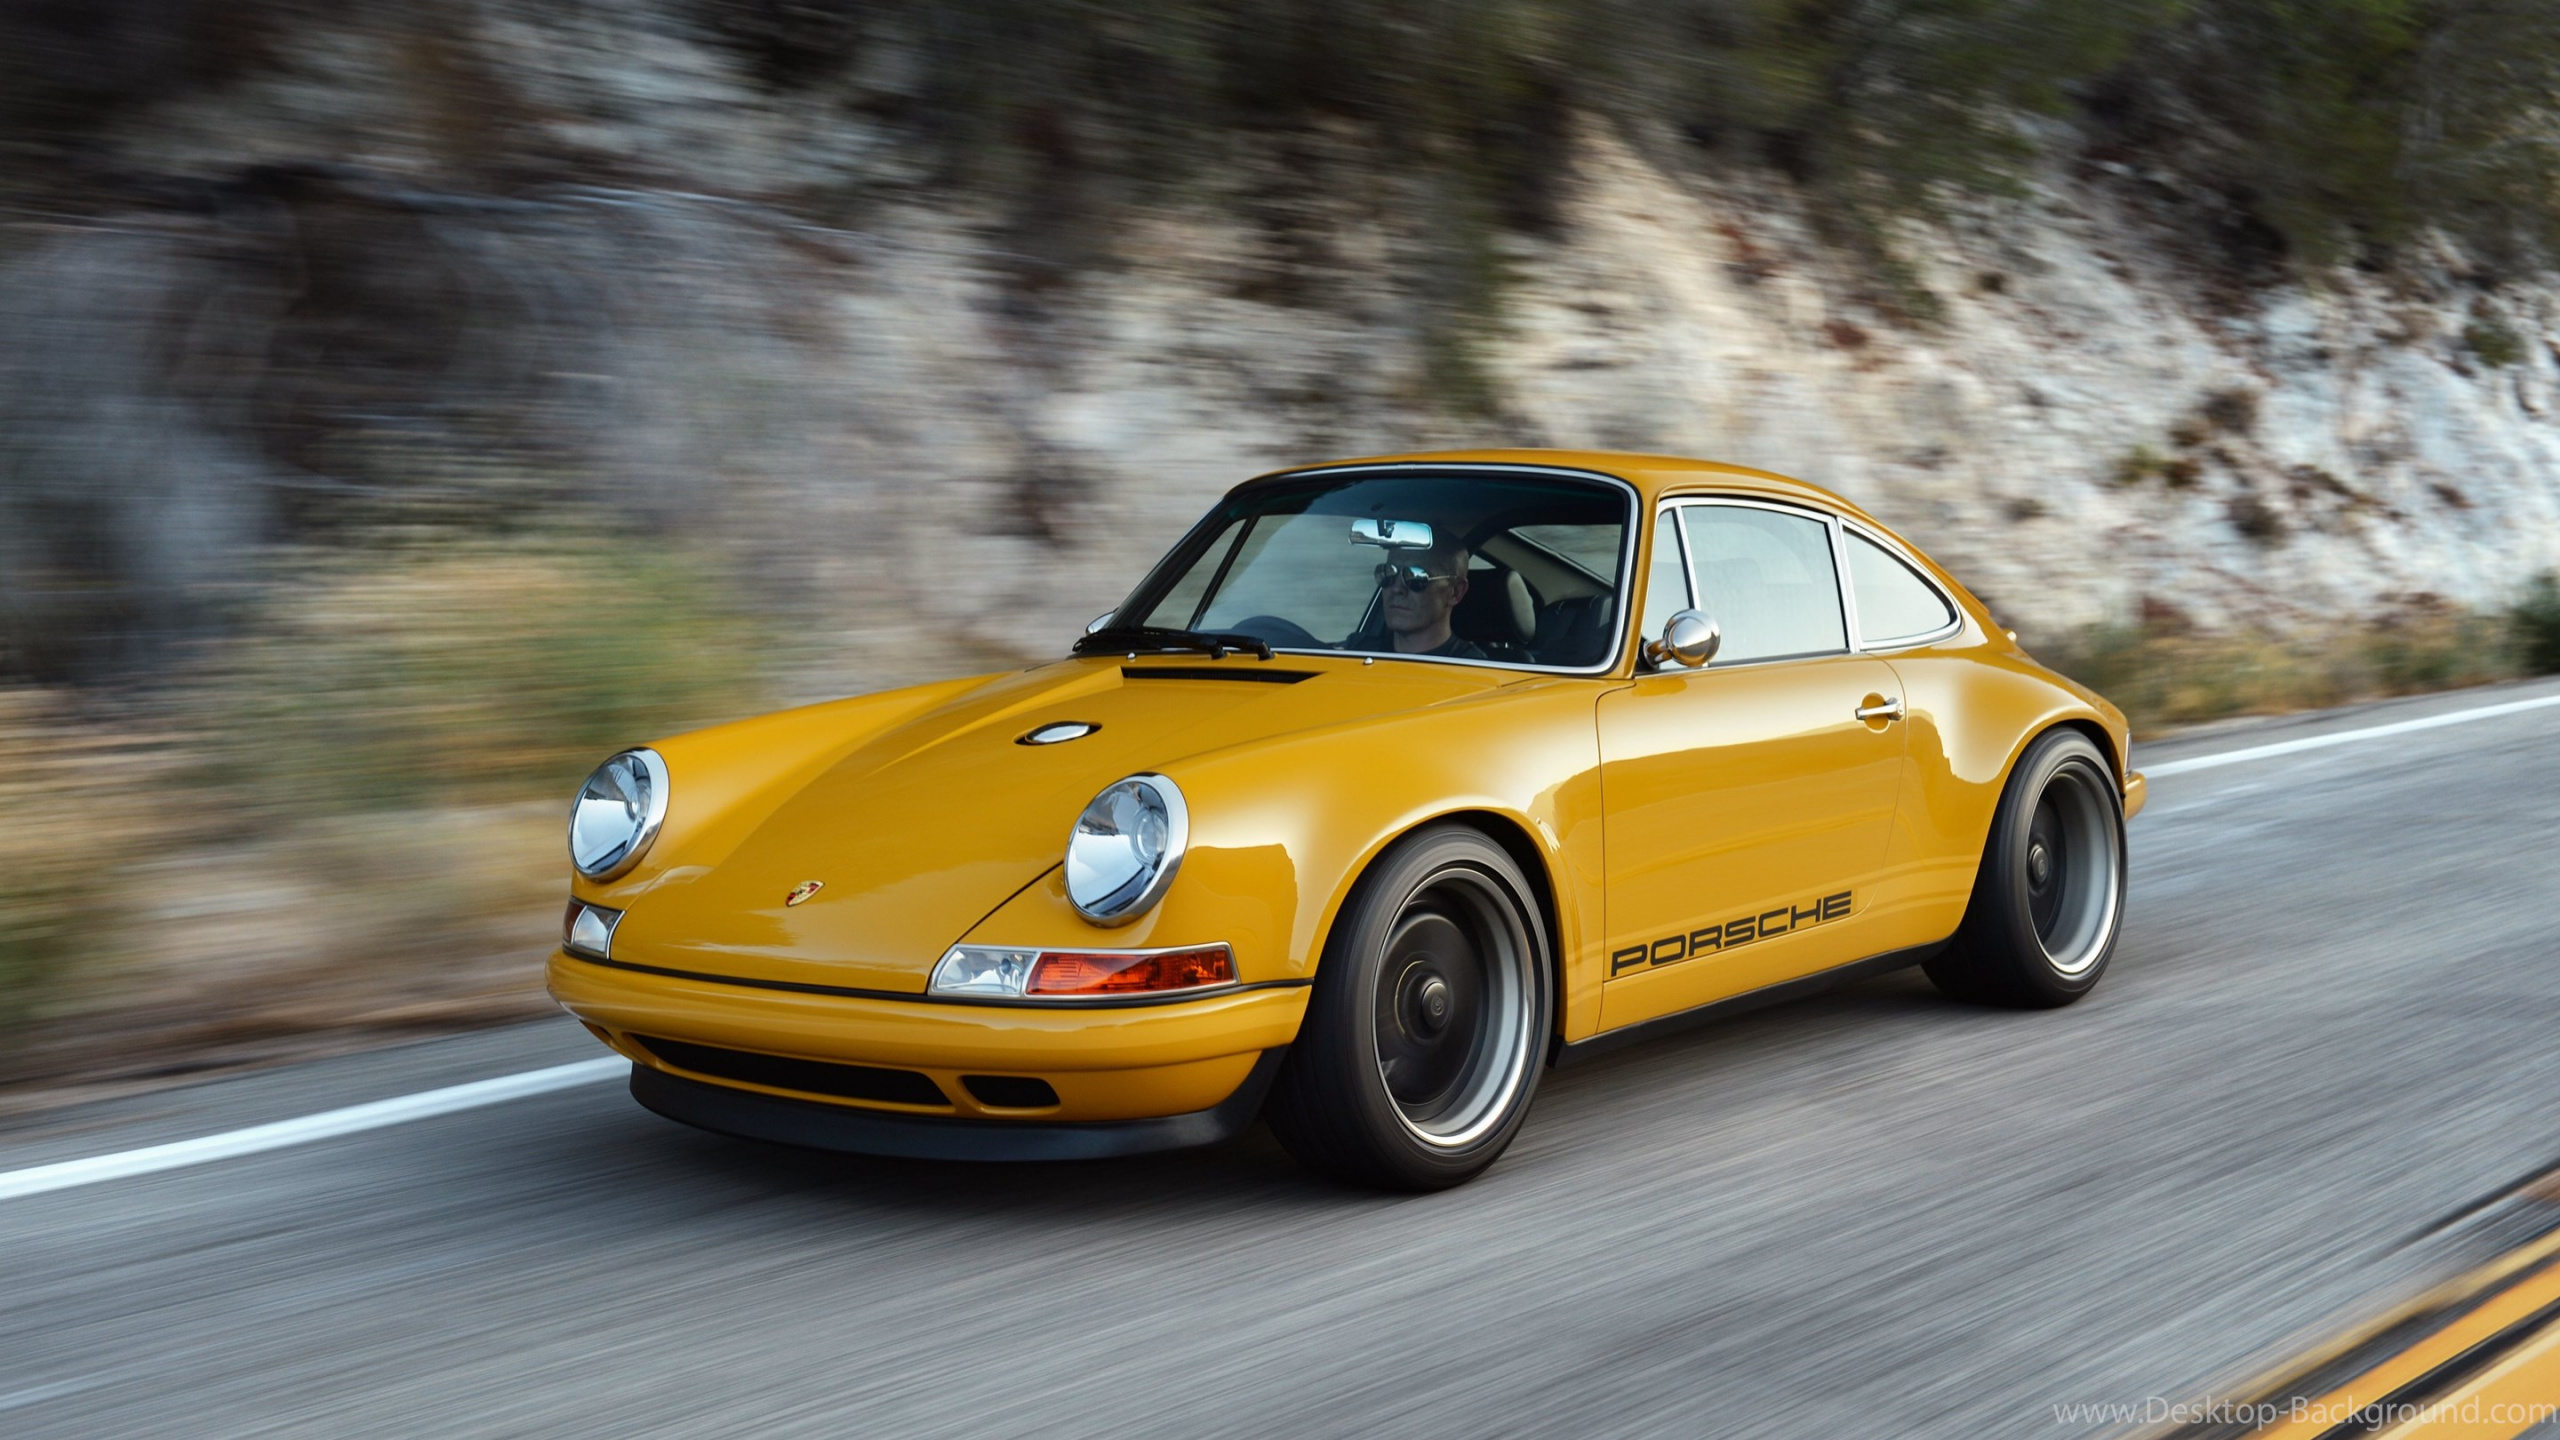 Porsche 911, Porsche, Auto, Sportwagen, Porsche 911 Classic. Wallpaper in 2560x1440 Resolution